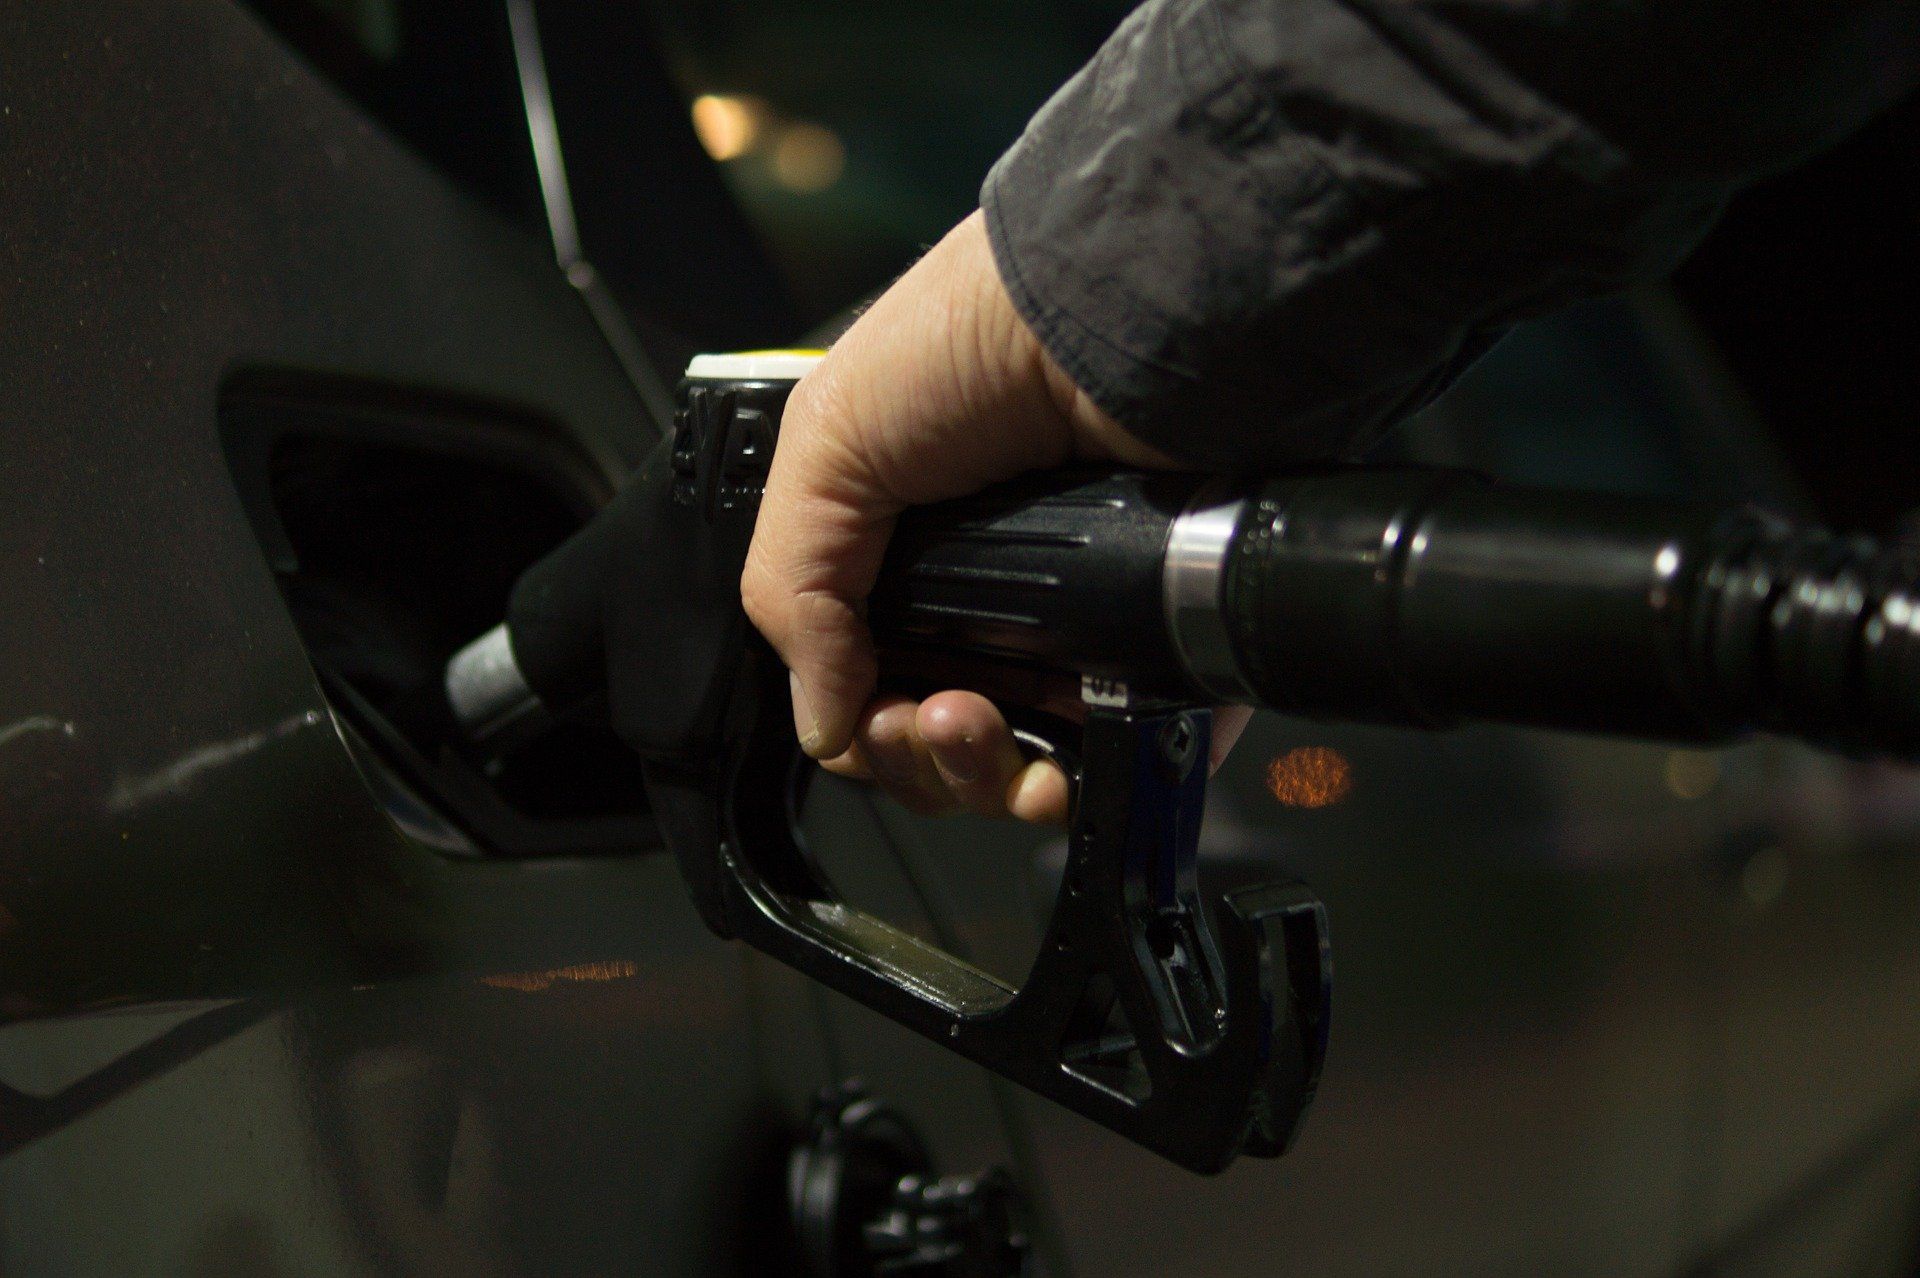 Fuel price August 8, 2022: Petrol Rs 106.31, diesel Rs 94.27 in Mumbai